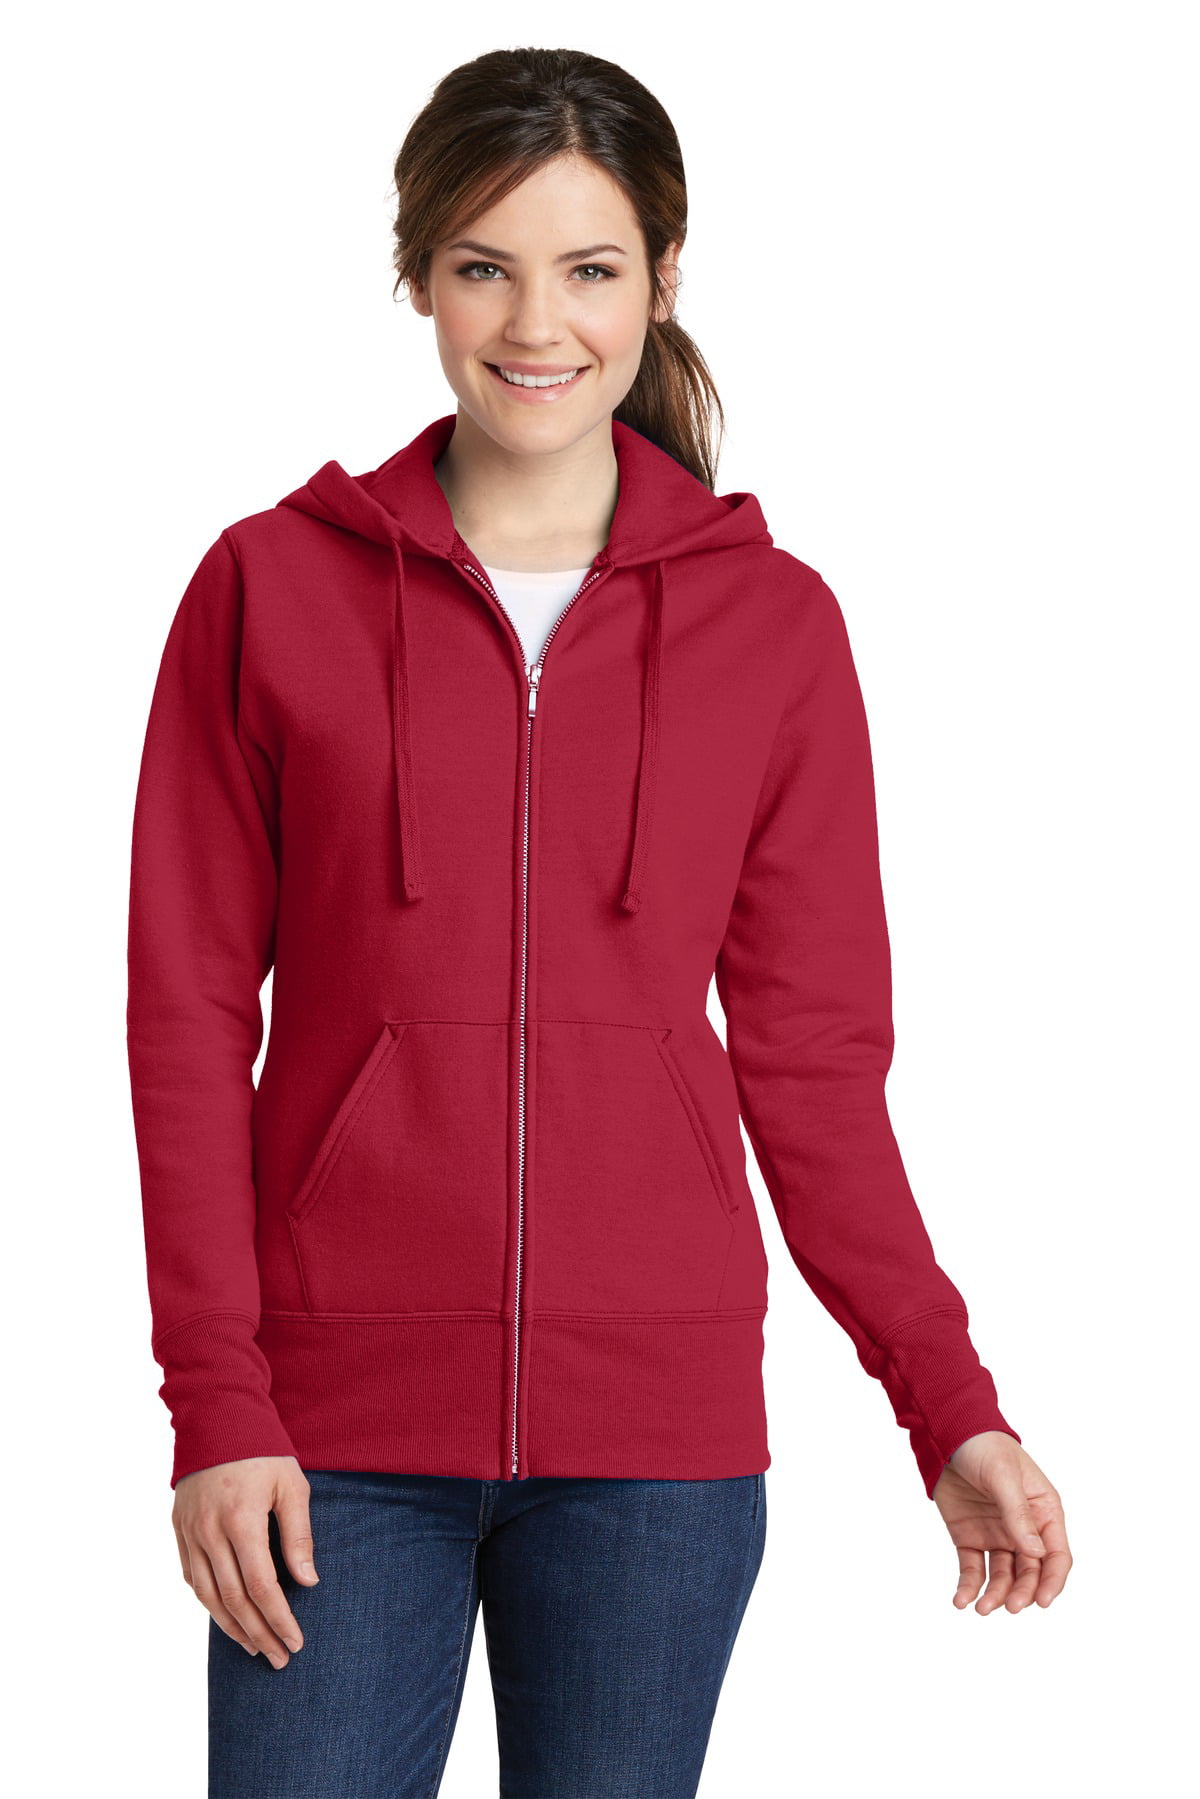 Port & Company® Ladies Core Fleece Full-Zip Hooded Sweatshirt. Lpc78zh ...